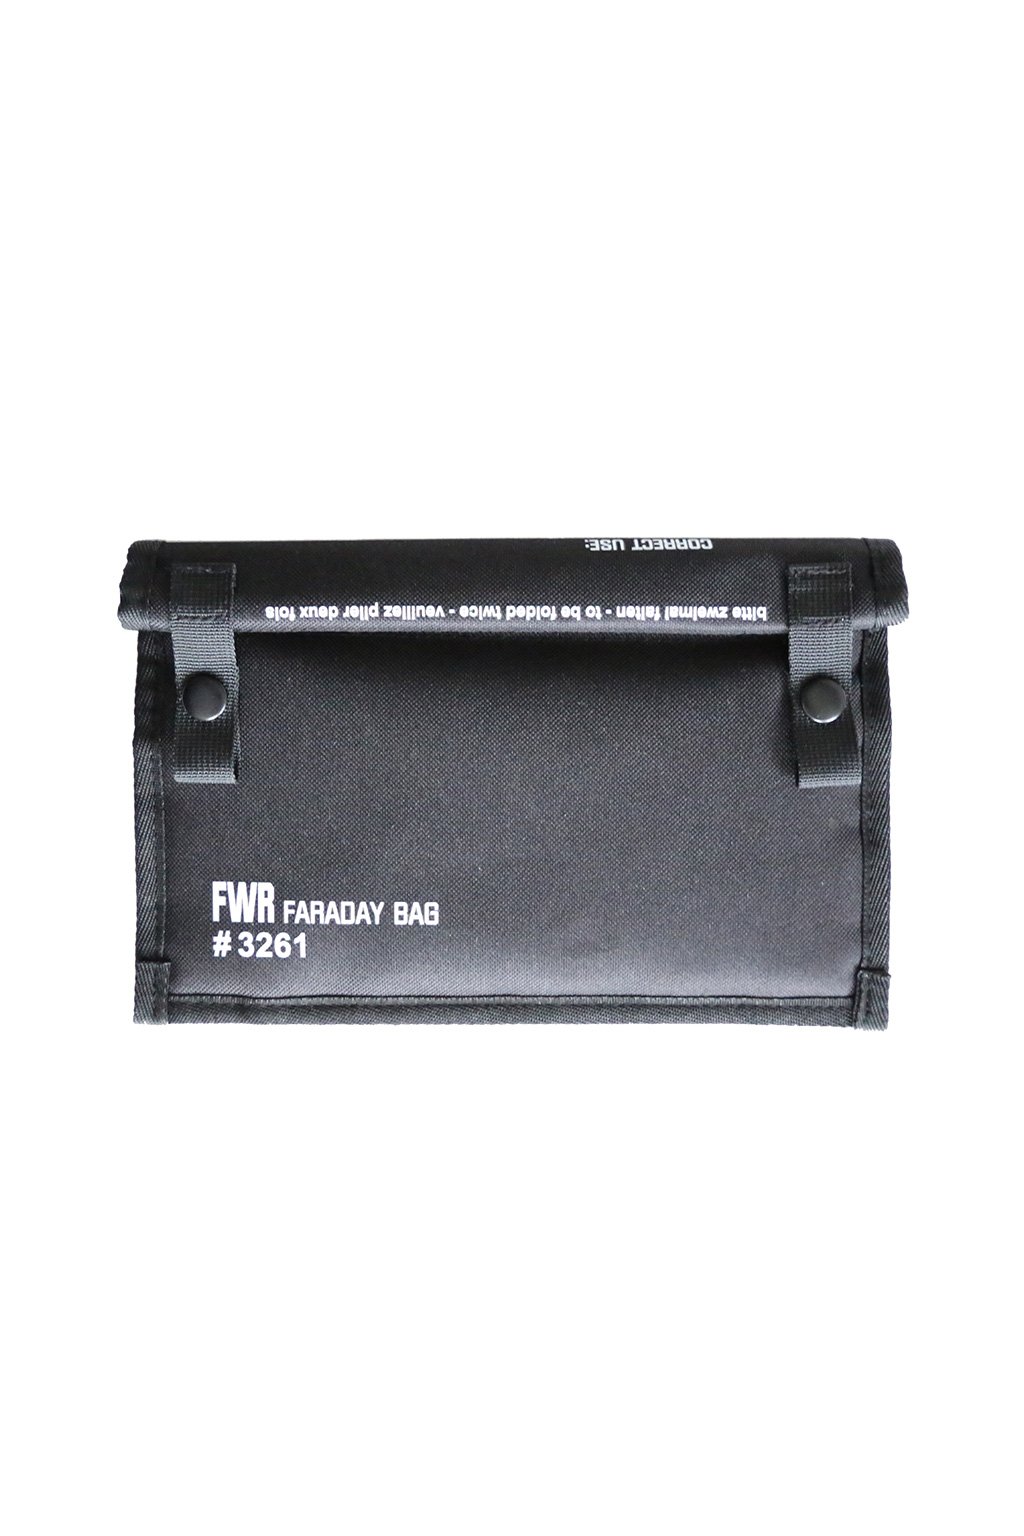 FWR Faraday bag small Gen. M 